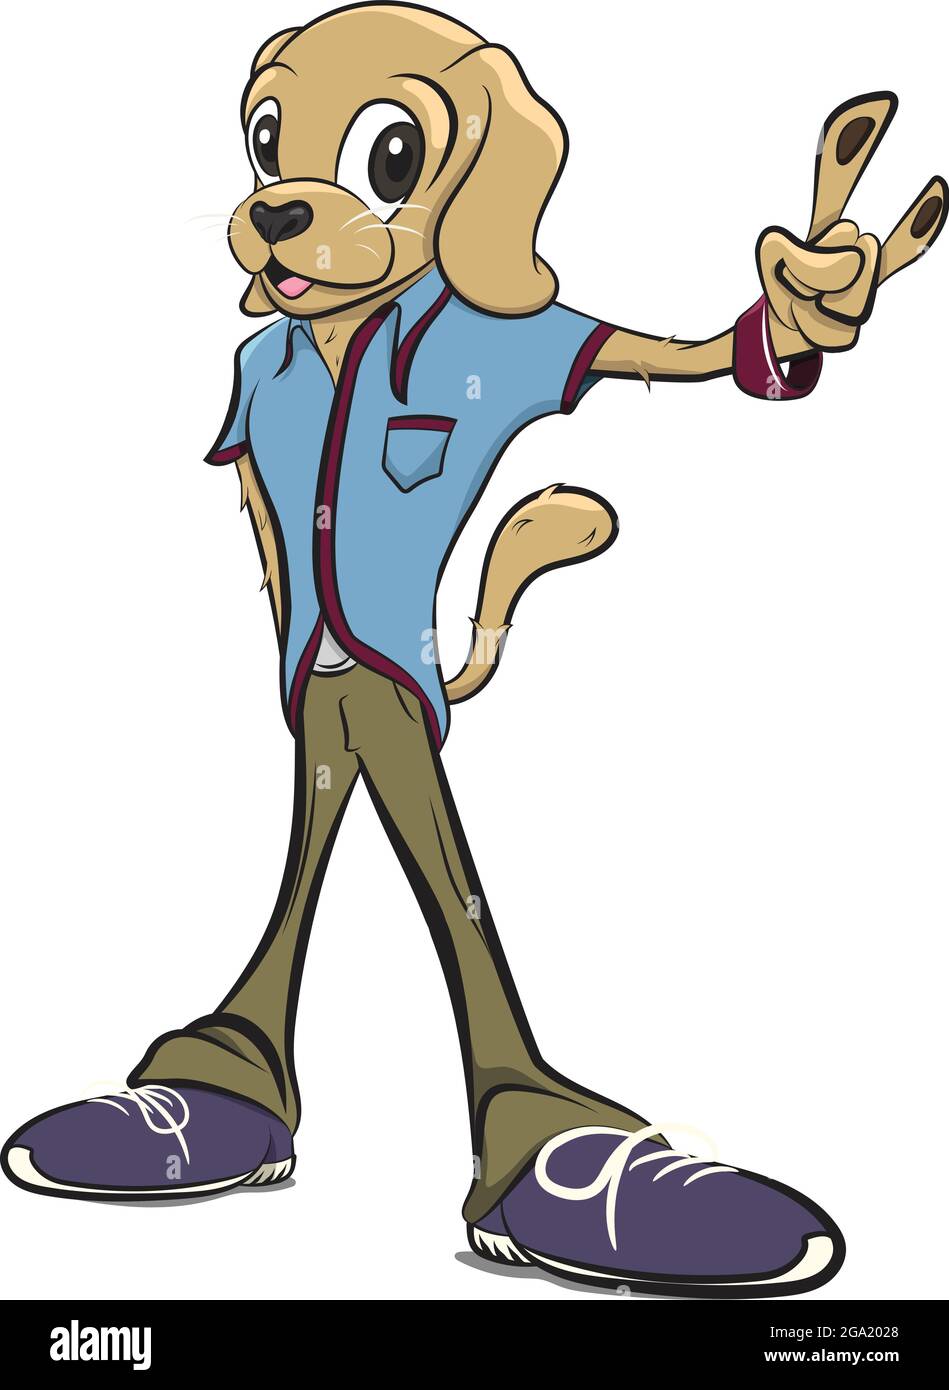 Animali antropomorfi. Corpo umano con testa cane che indossa abiti freschi. Personaggio Cool Dog che indossa una camicia blu e pantaloni marroni. K9 Antropomorfismo. An Illustrazione Vettoriale